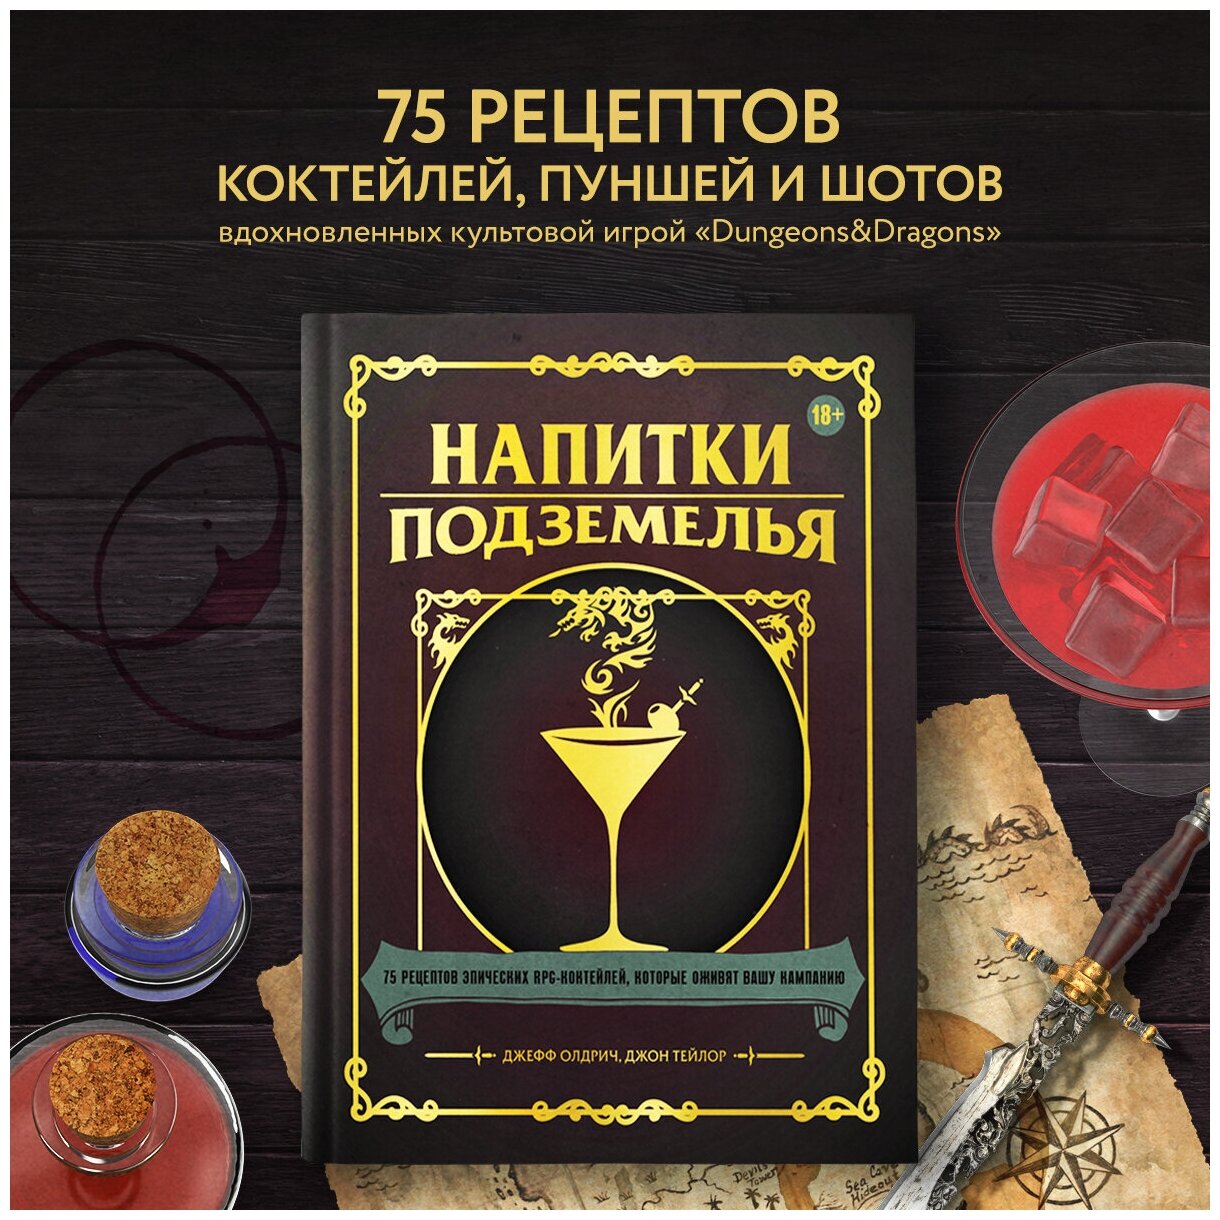 Напитки Подземелья: 75 рецептов эпических RPG-коктейлей, которые оживят вашу кампанию - фото №1